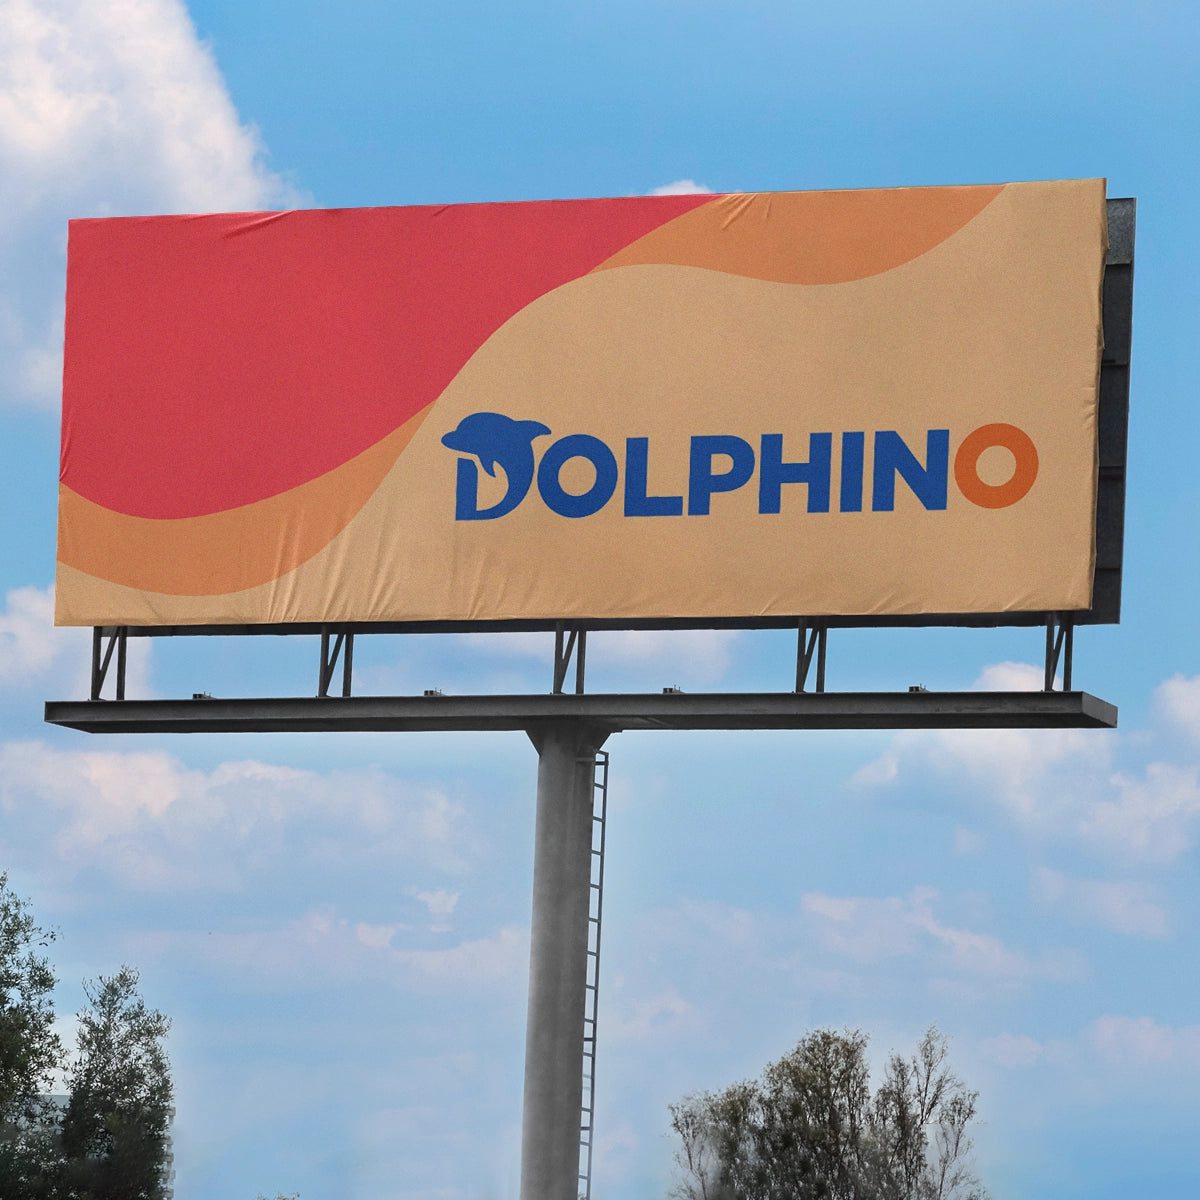 dolphino.com